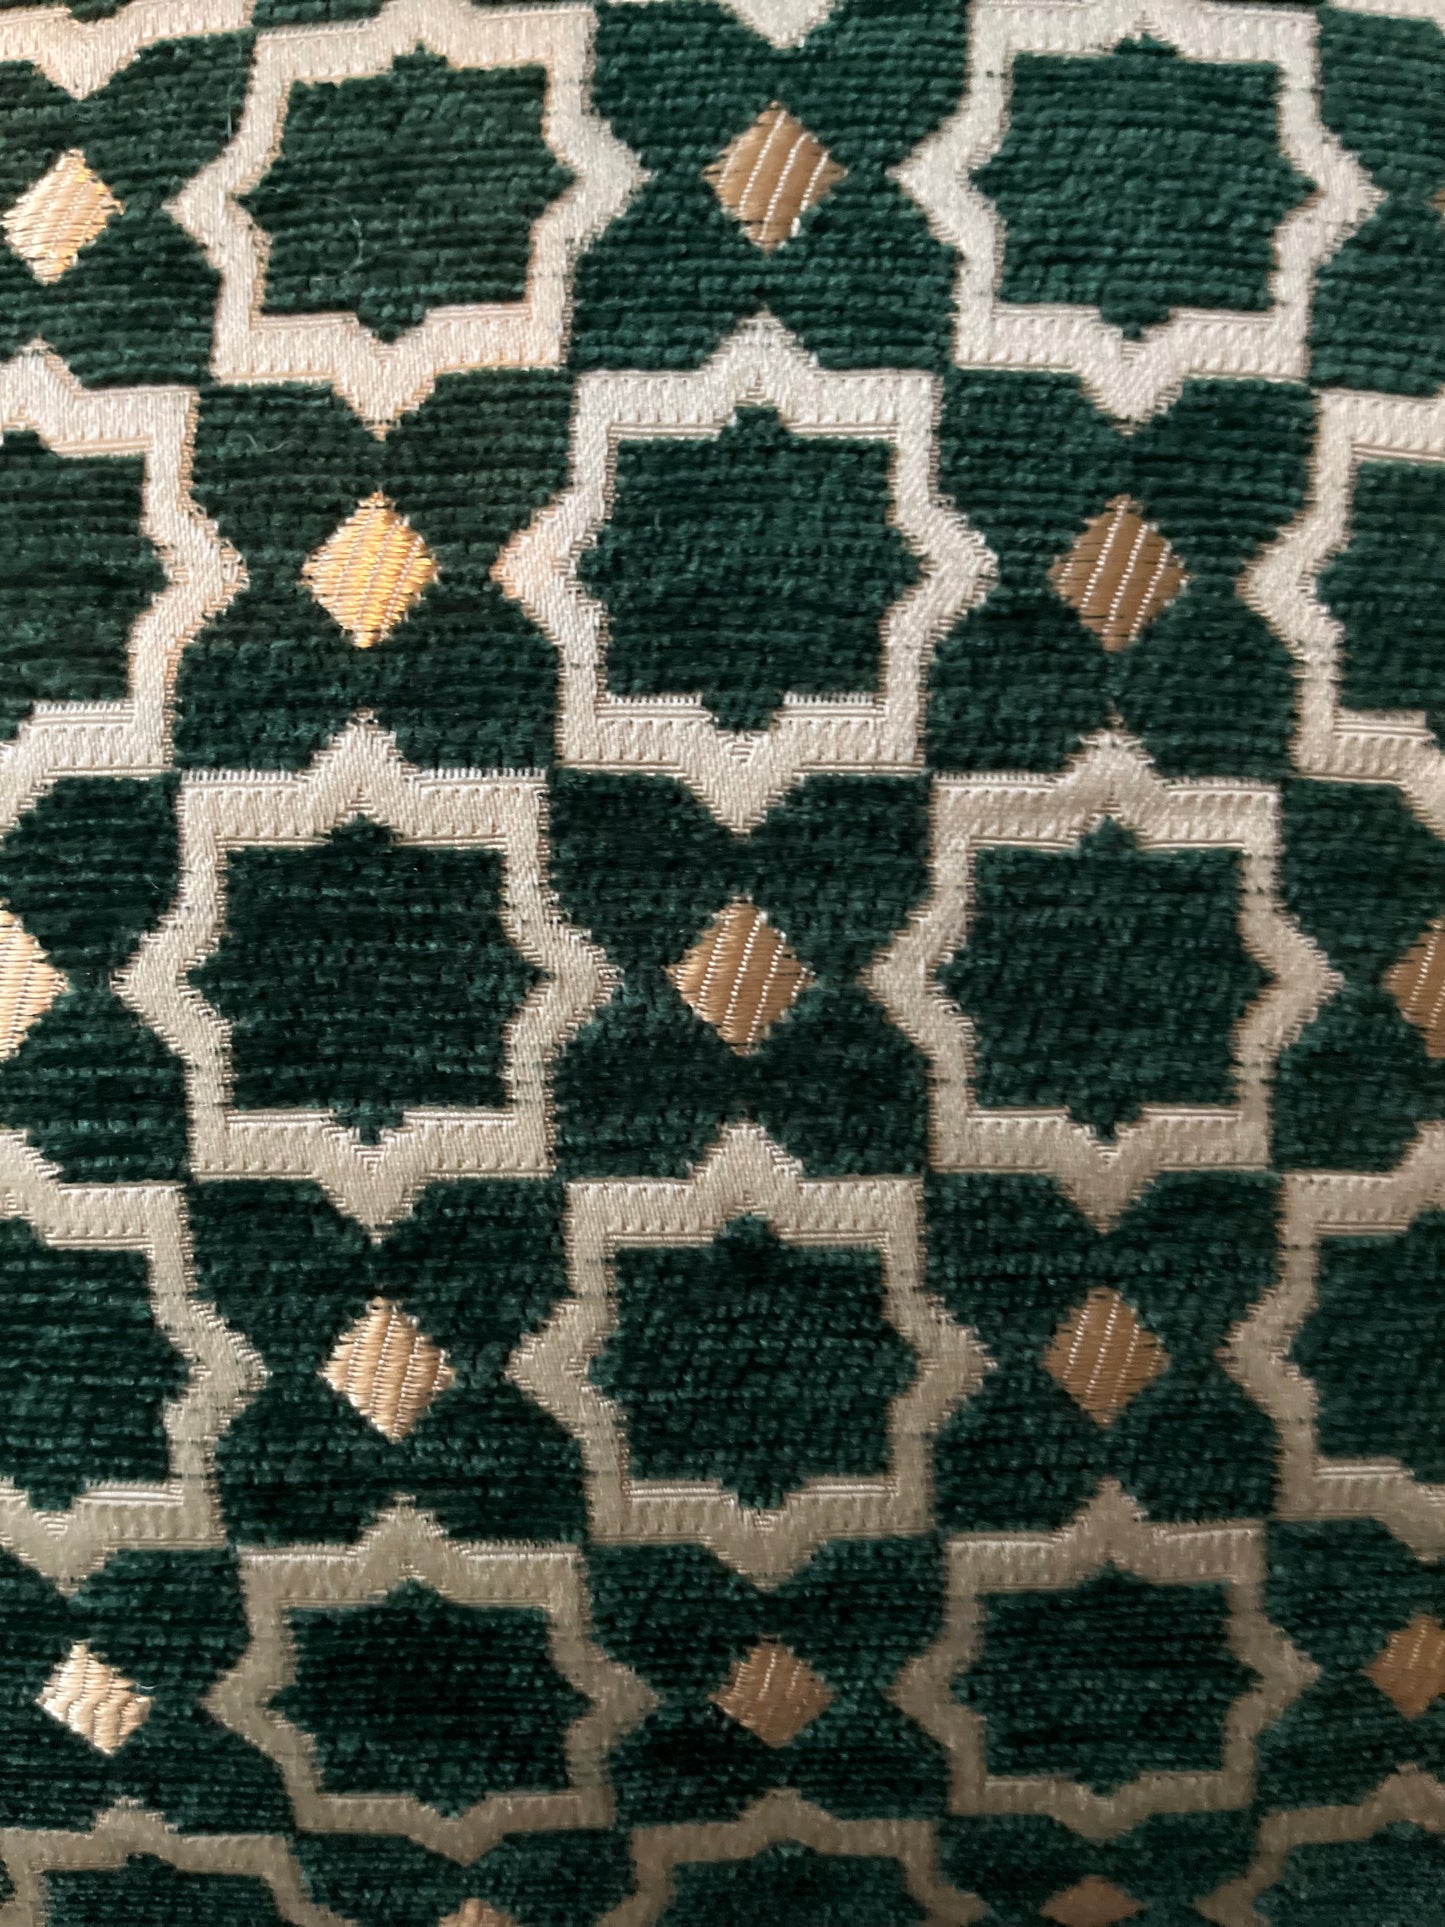 Maya Emerald Green Woven Cushion Cover